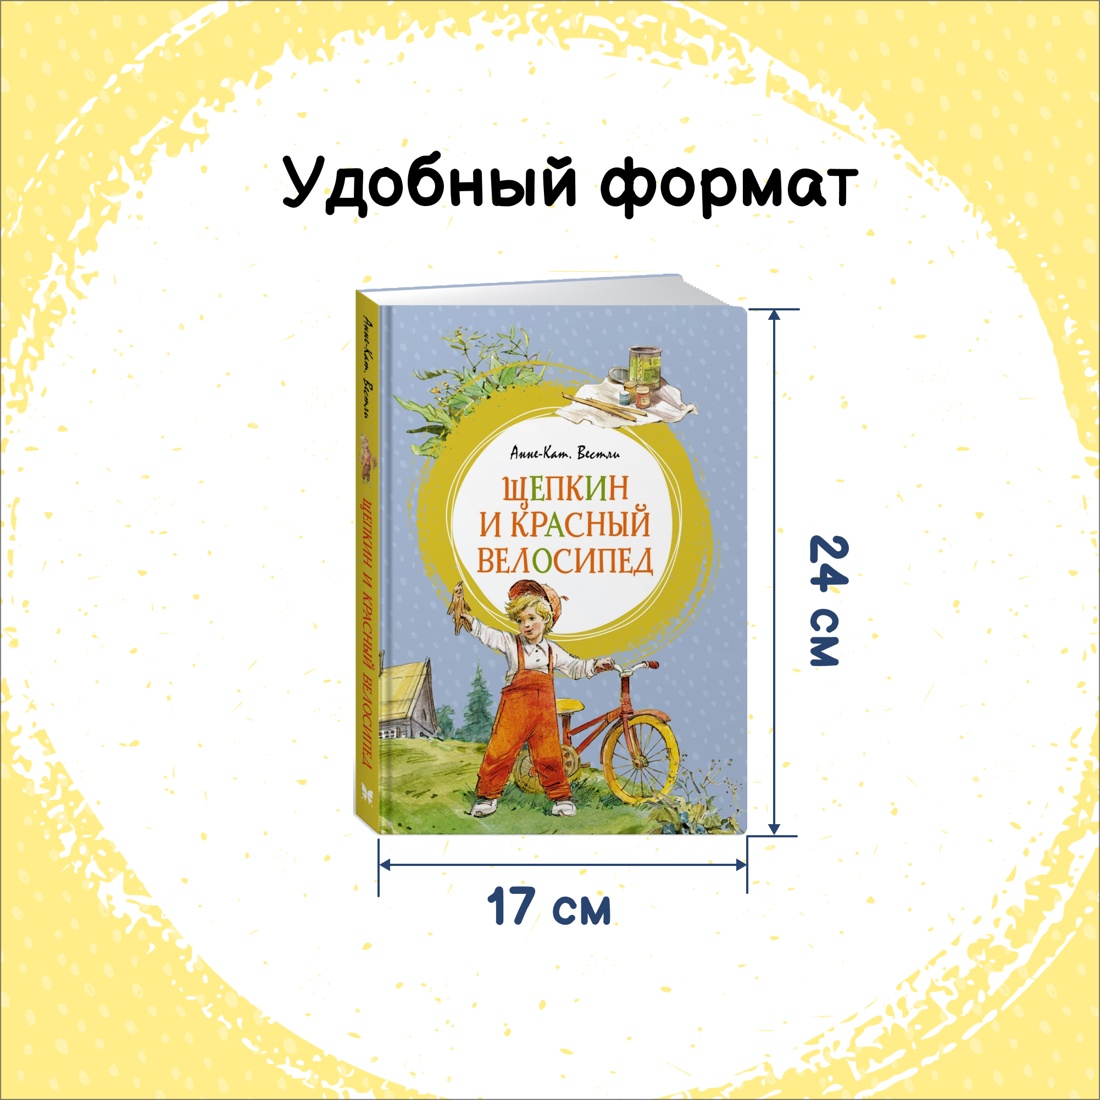 Промо материал к книге "Щепкин и красный велосипед" №1